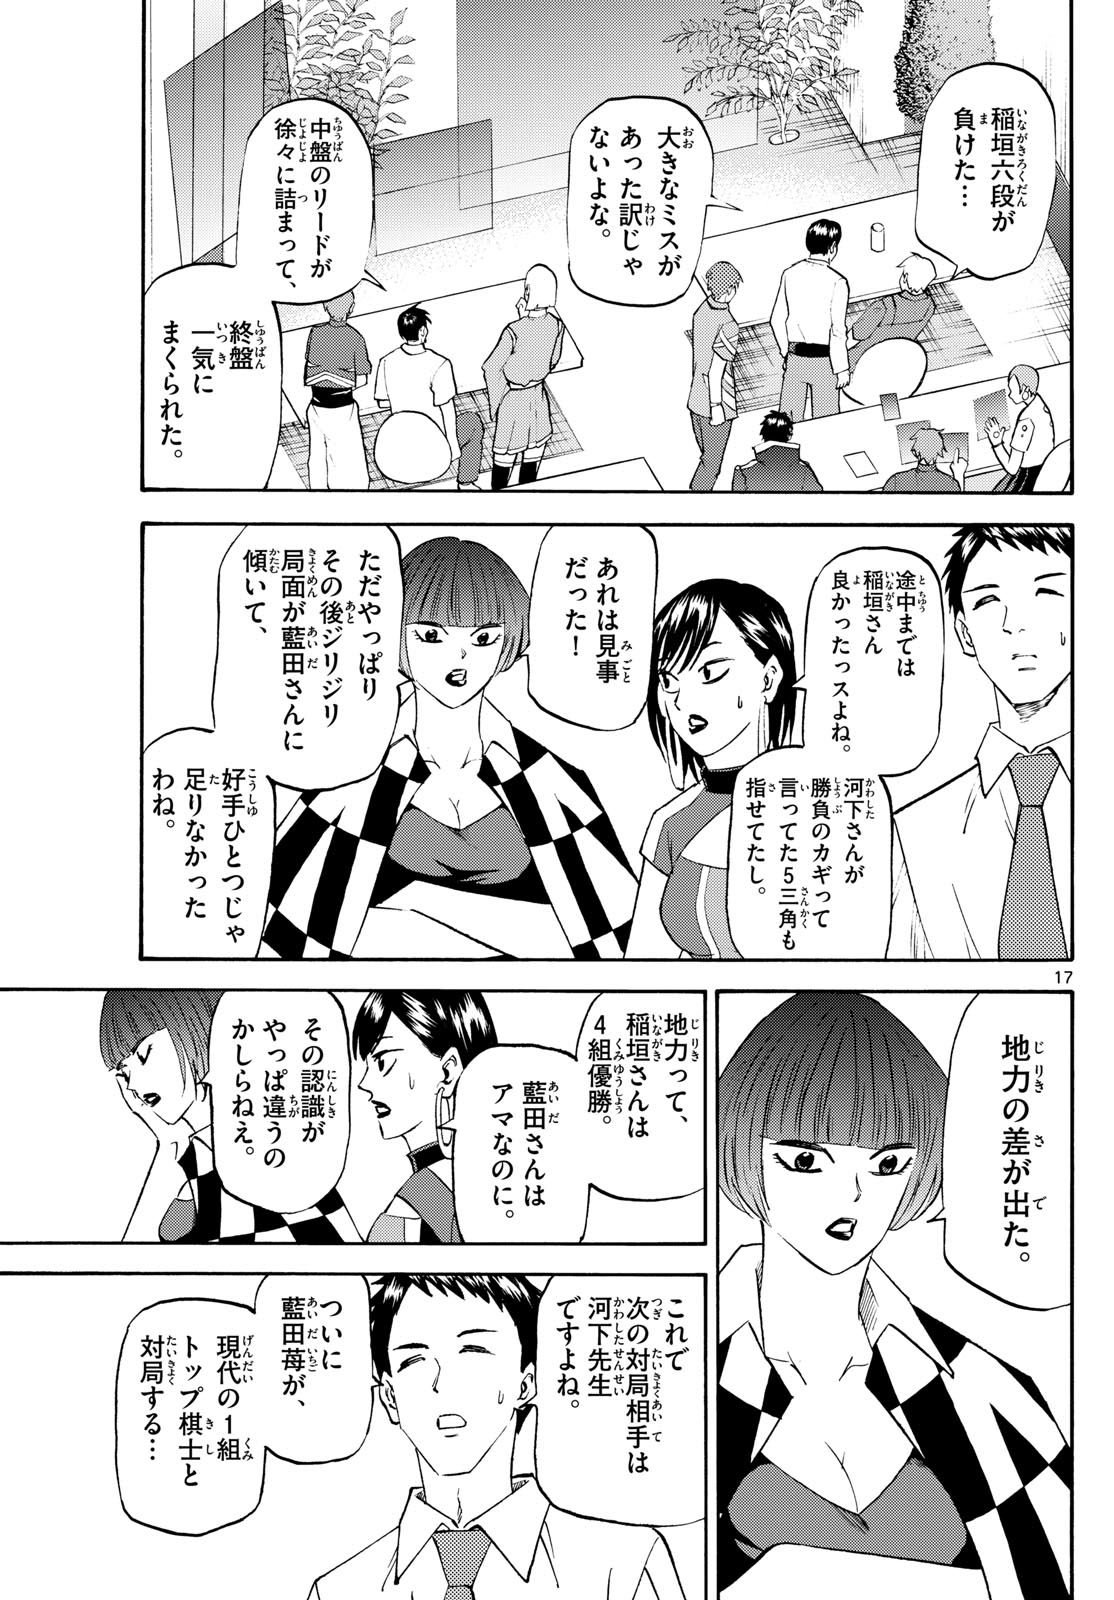 Tatsu to Ichigo - Chapter 198 - Page 17